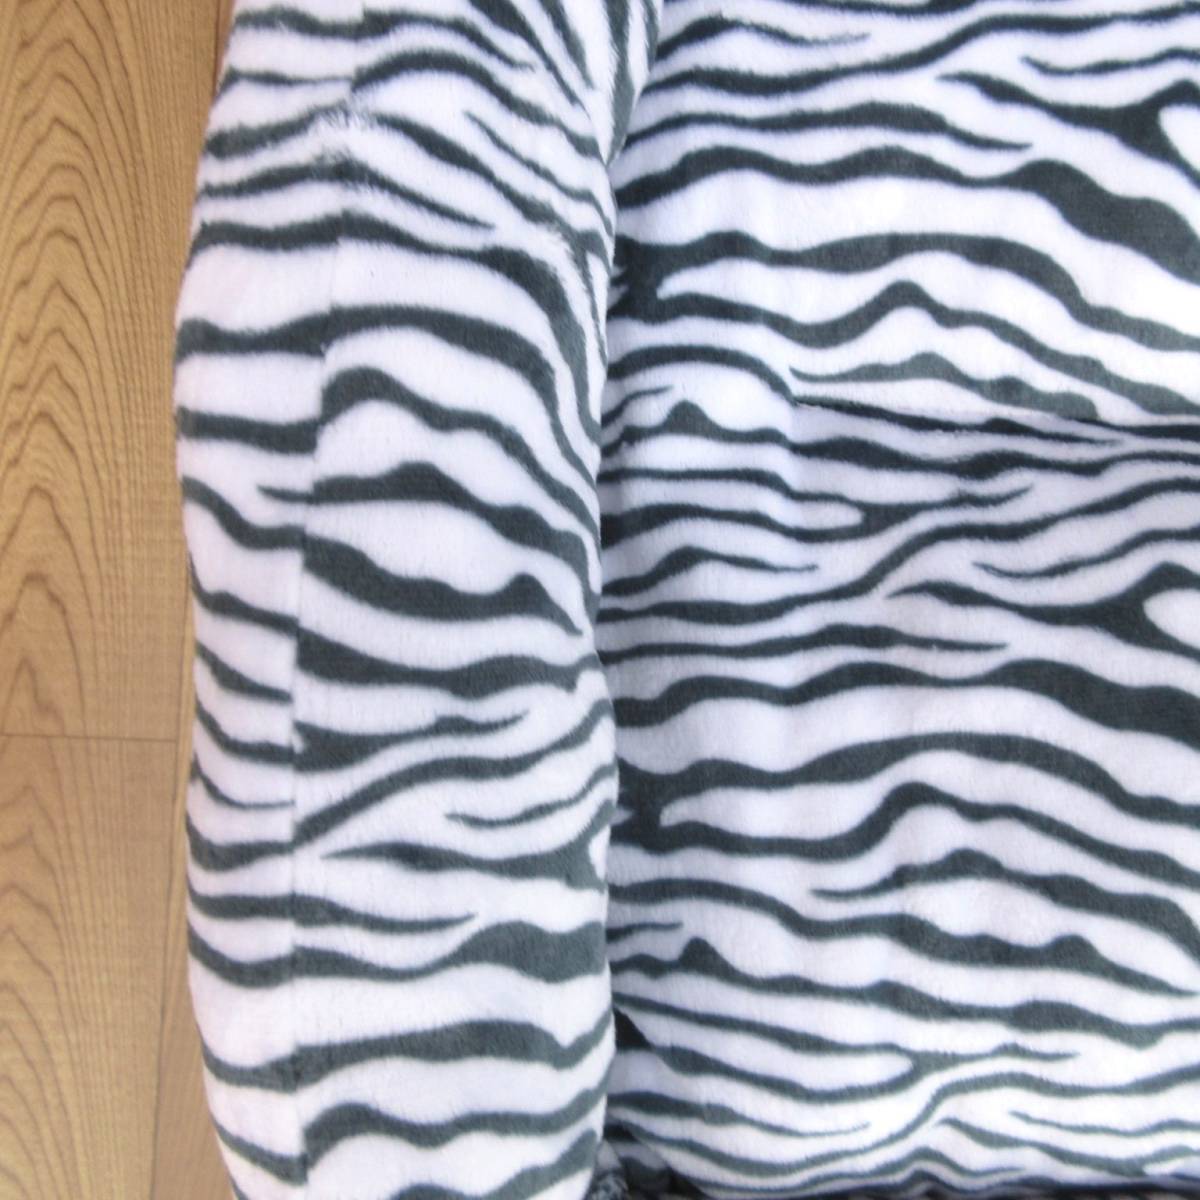  цена снижена! новый товар фланель квадратное домашнее животное bed * домашнее животное диван M размер Zebra рисунок серый коврик круг мытье мягкость теплый 